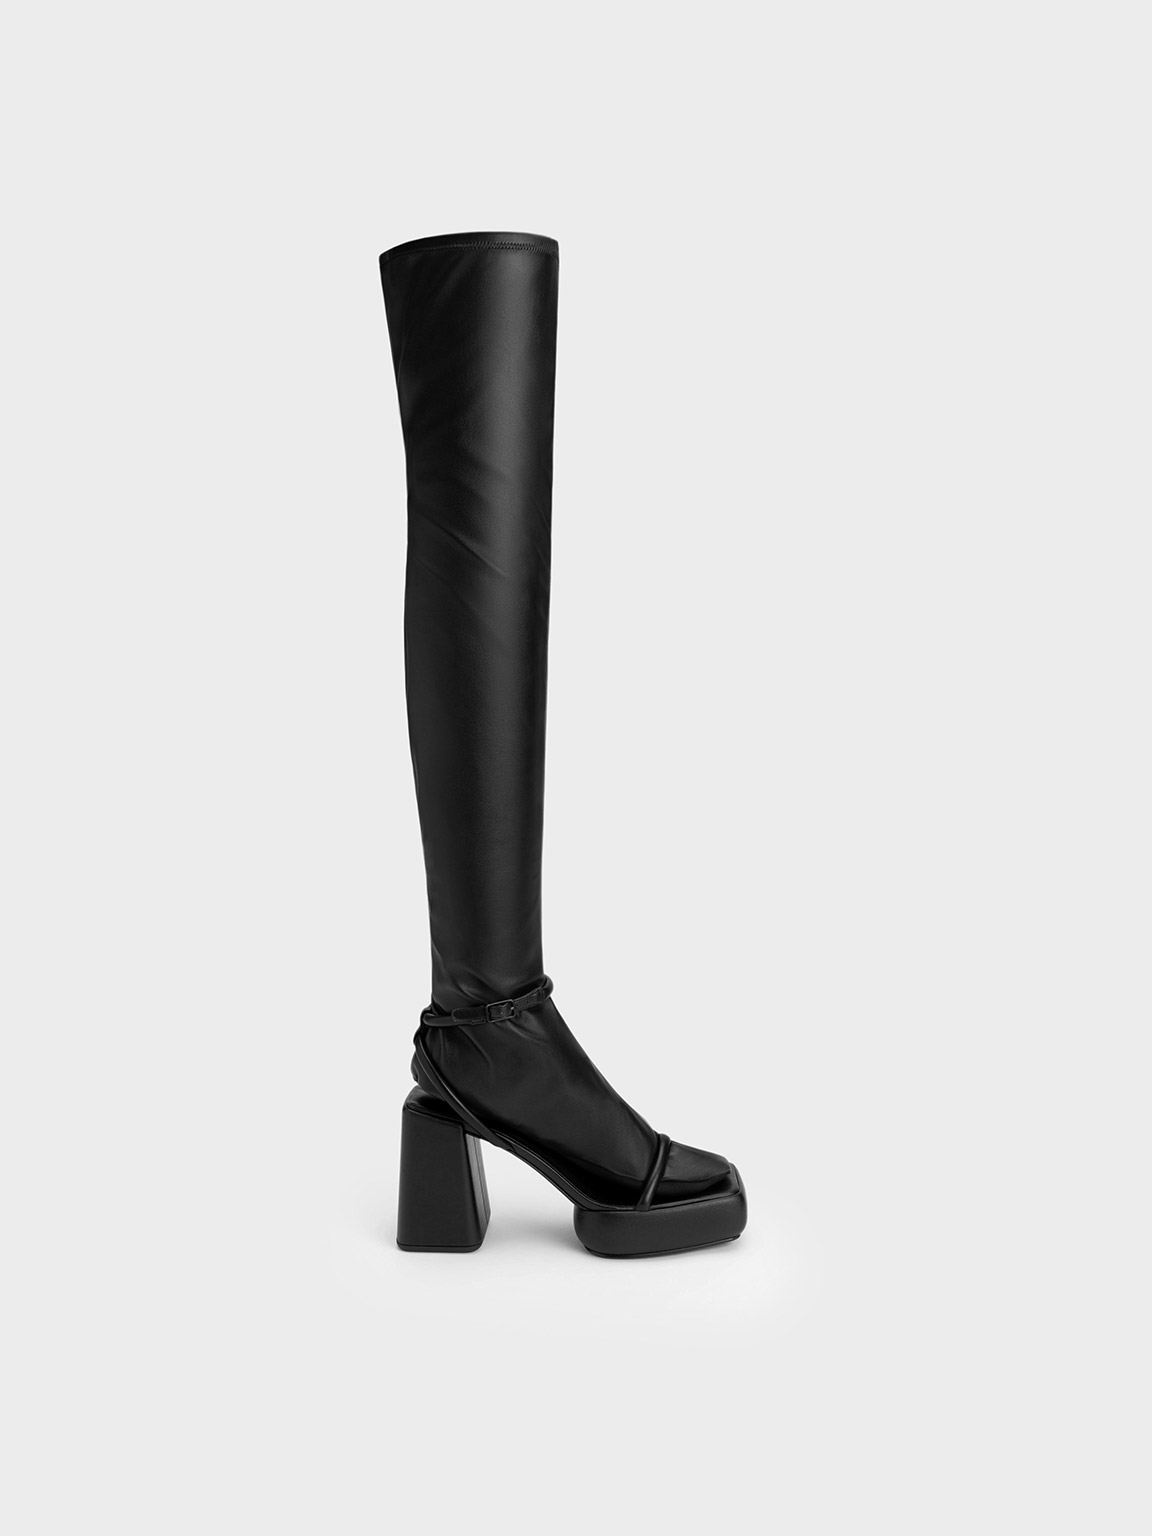 Giày boots Lucile Thigh-High black (Đen) | Giảm giá - CHARLES 